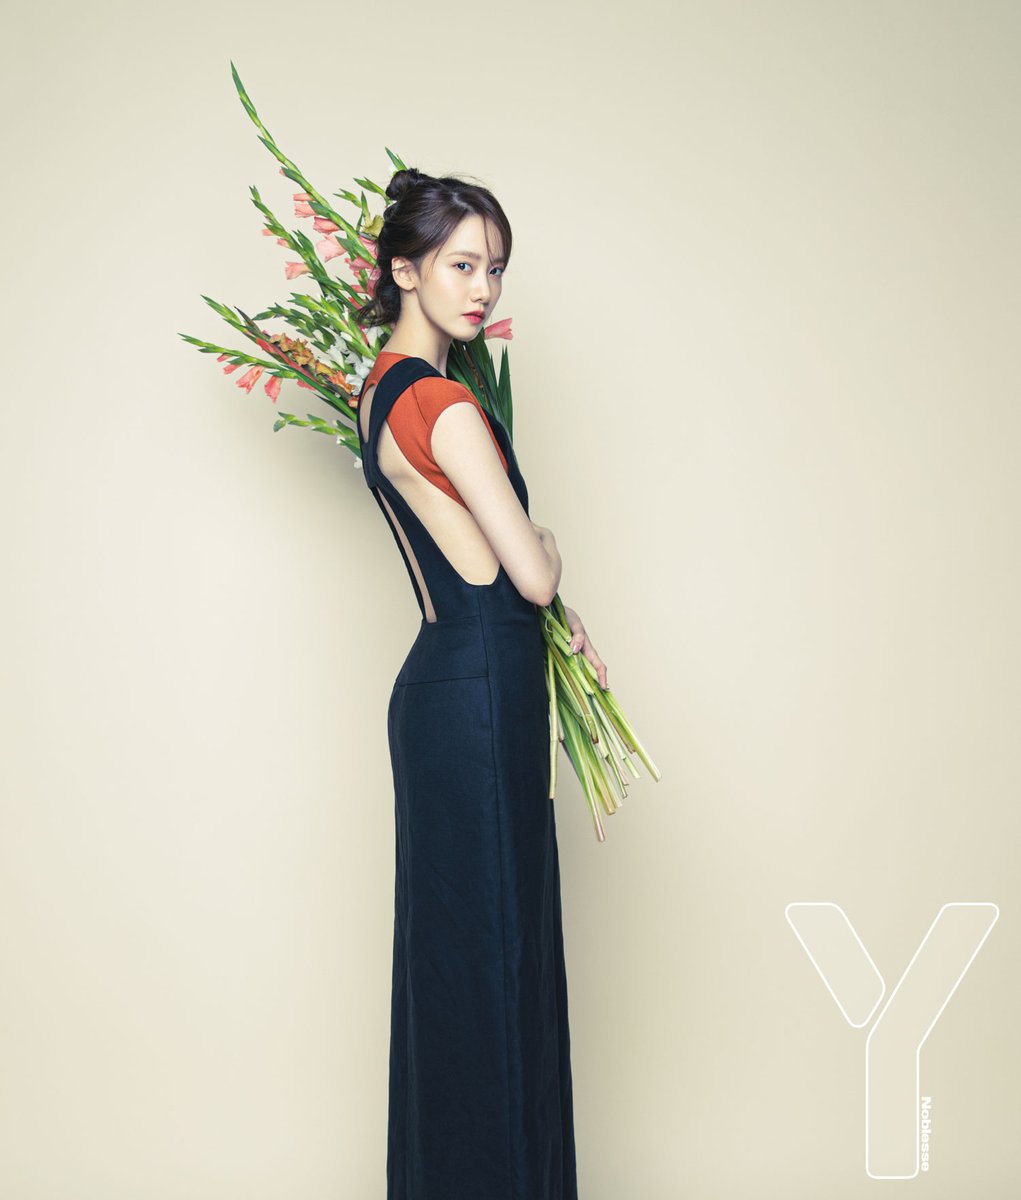 Yoona (SNSD) khoe vẻ sắc vóc trẻ trung, cuốn hút trong ảnh quảng cáo - Ảnh 10